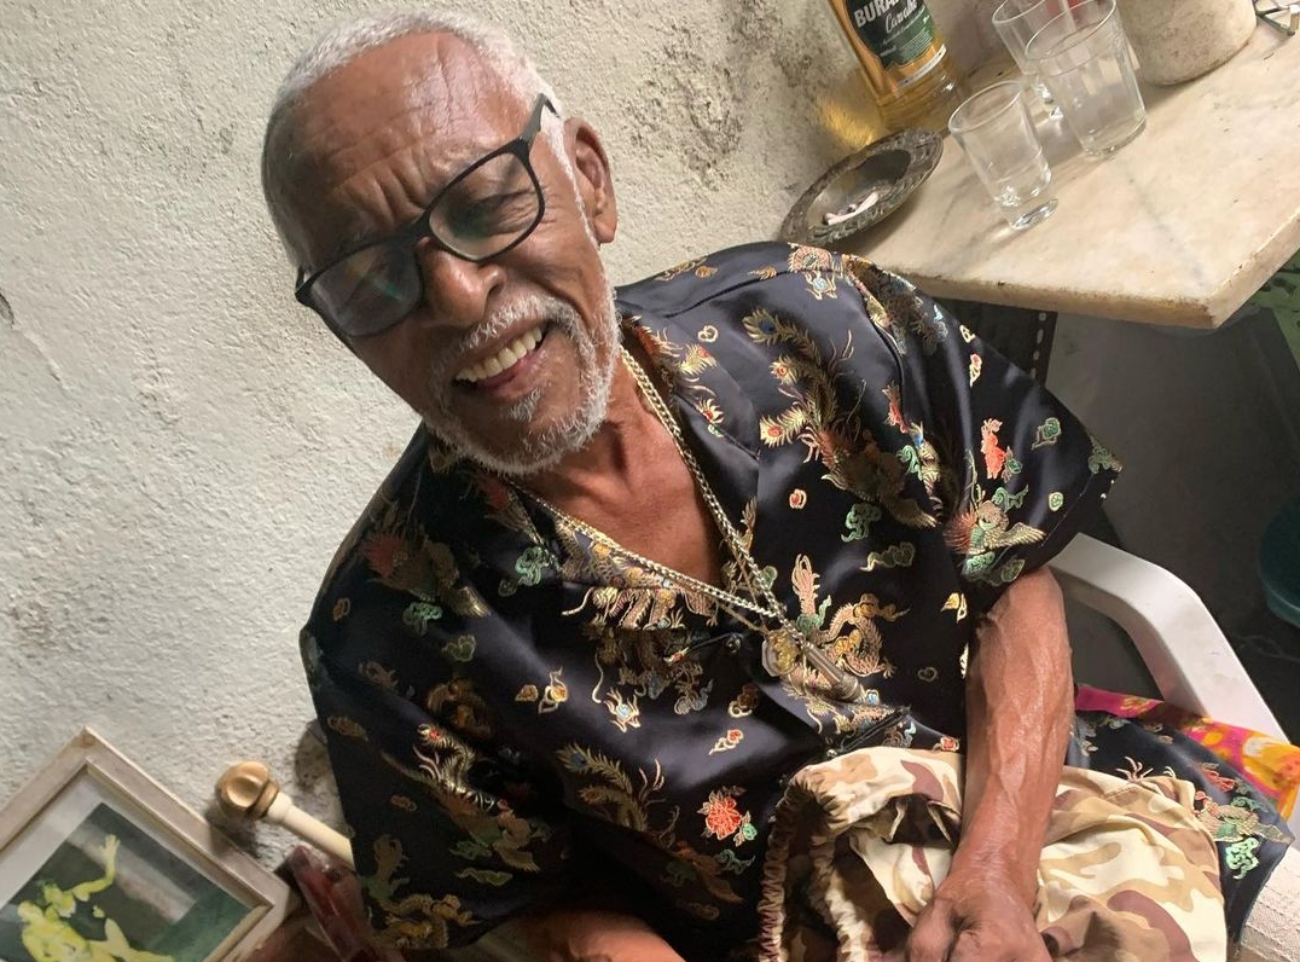 Fundador da Piedade de 84 anos ficou 31 dias internado depois de sofrer um infarto, seguido de uma infecção urinária e um AVC isquêmico